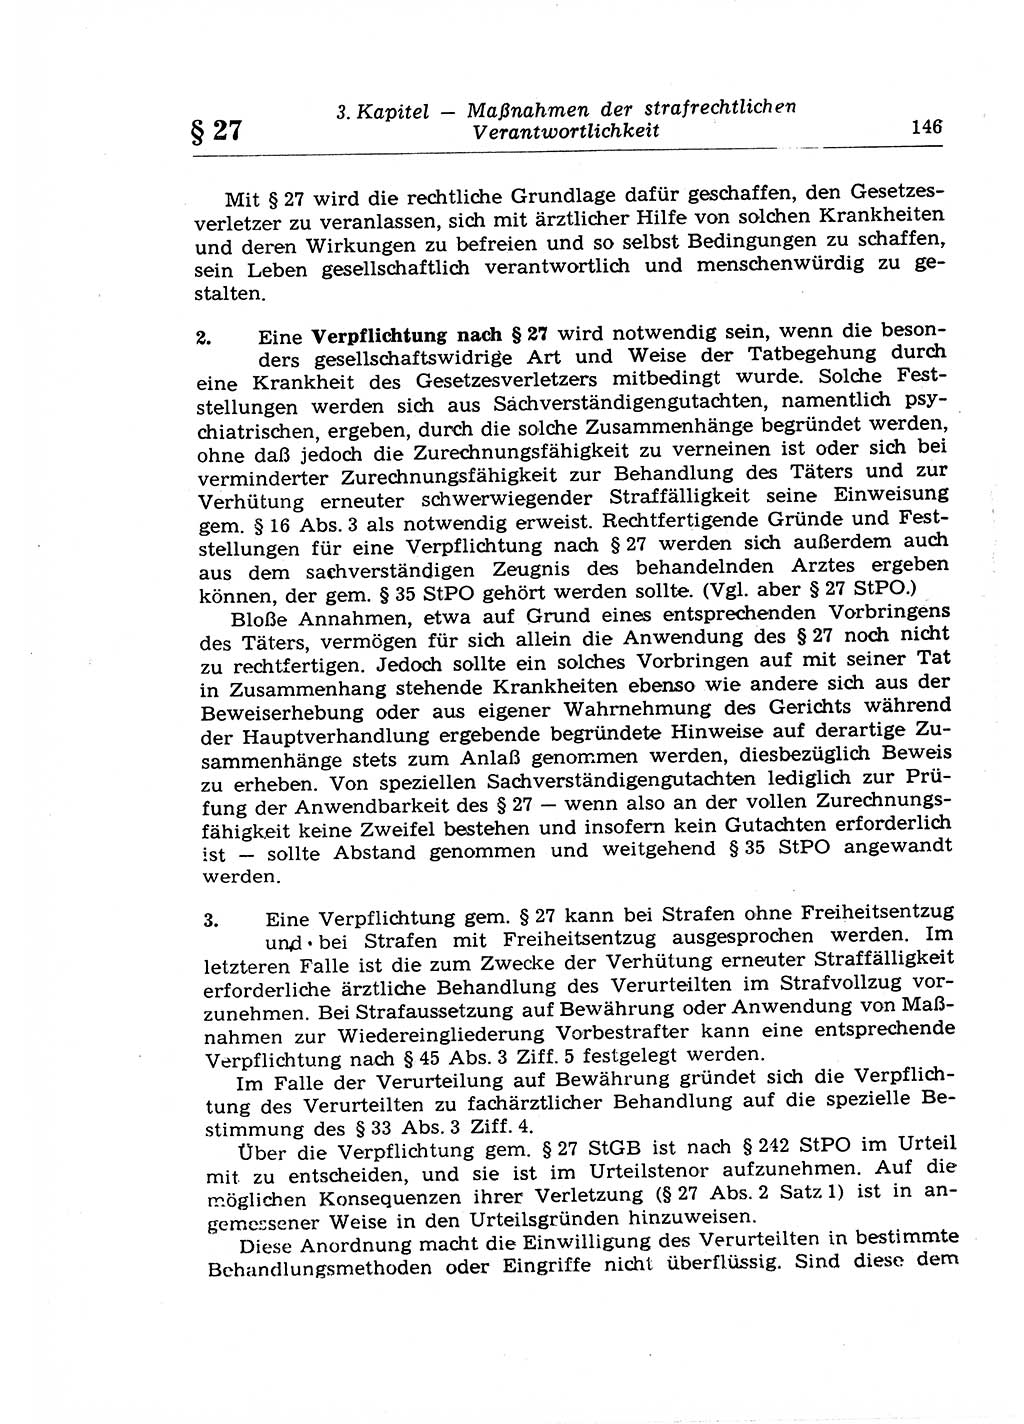 Strafrecht der Deutschen Demokratischen Republik (DDR), Lehrkommentar zum Strafgesetzbuch (StGB), Allgemeiner Teil 1969, Seite 146 (Strafr. DDR Lehrkomm. StGB AT 1969, S. 146)